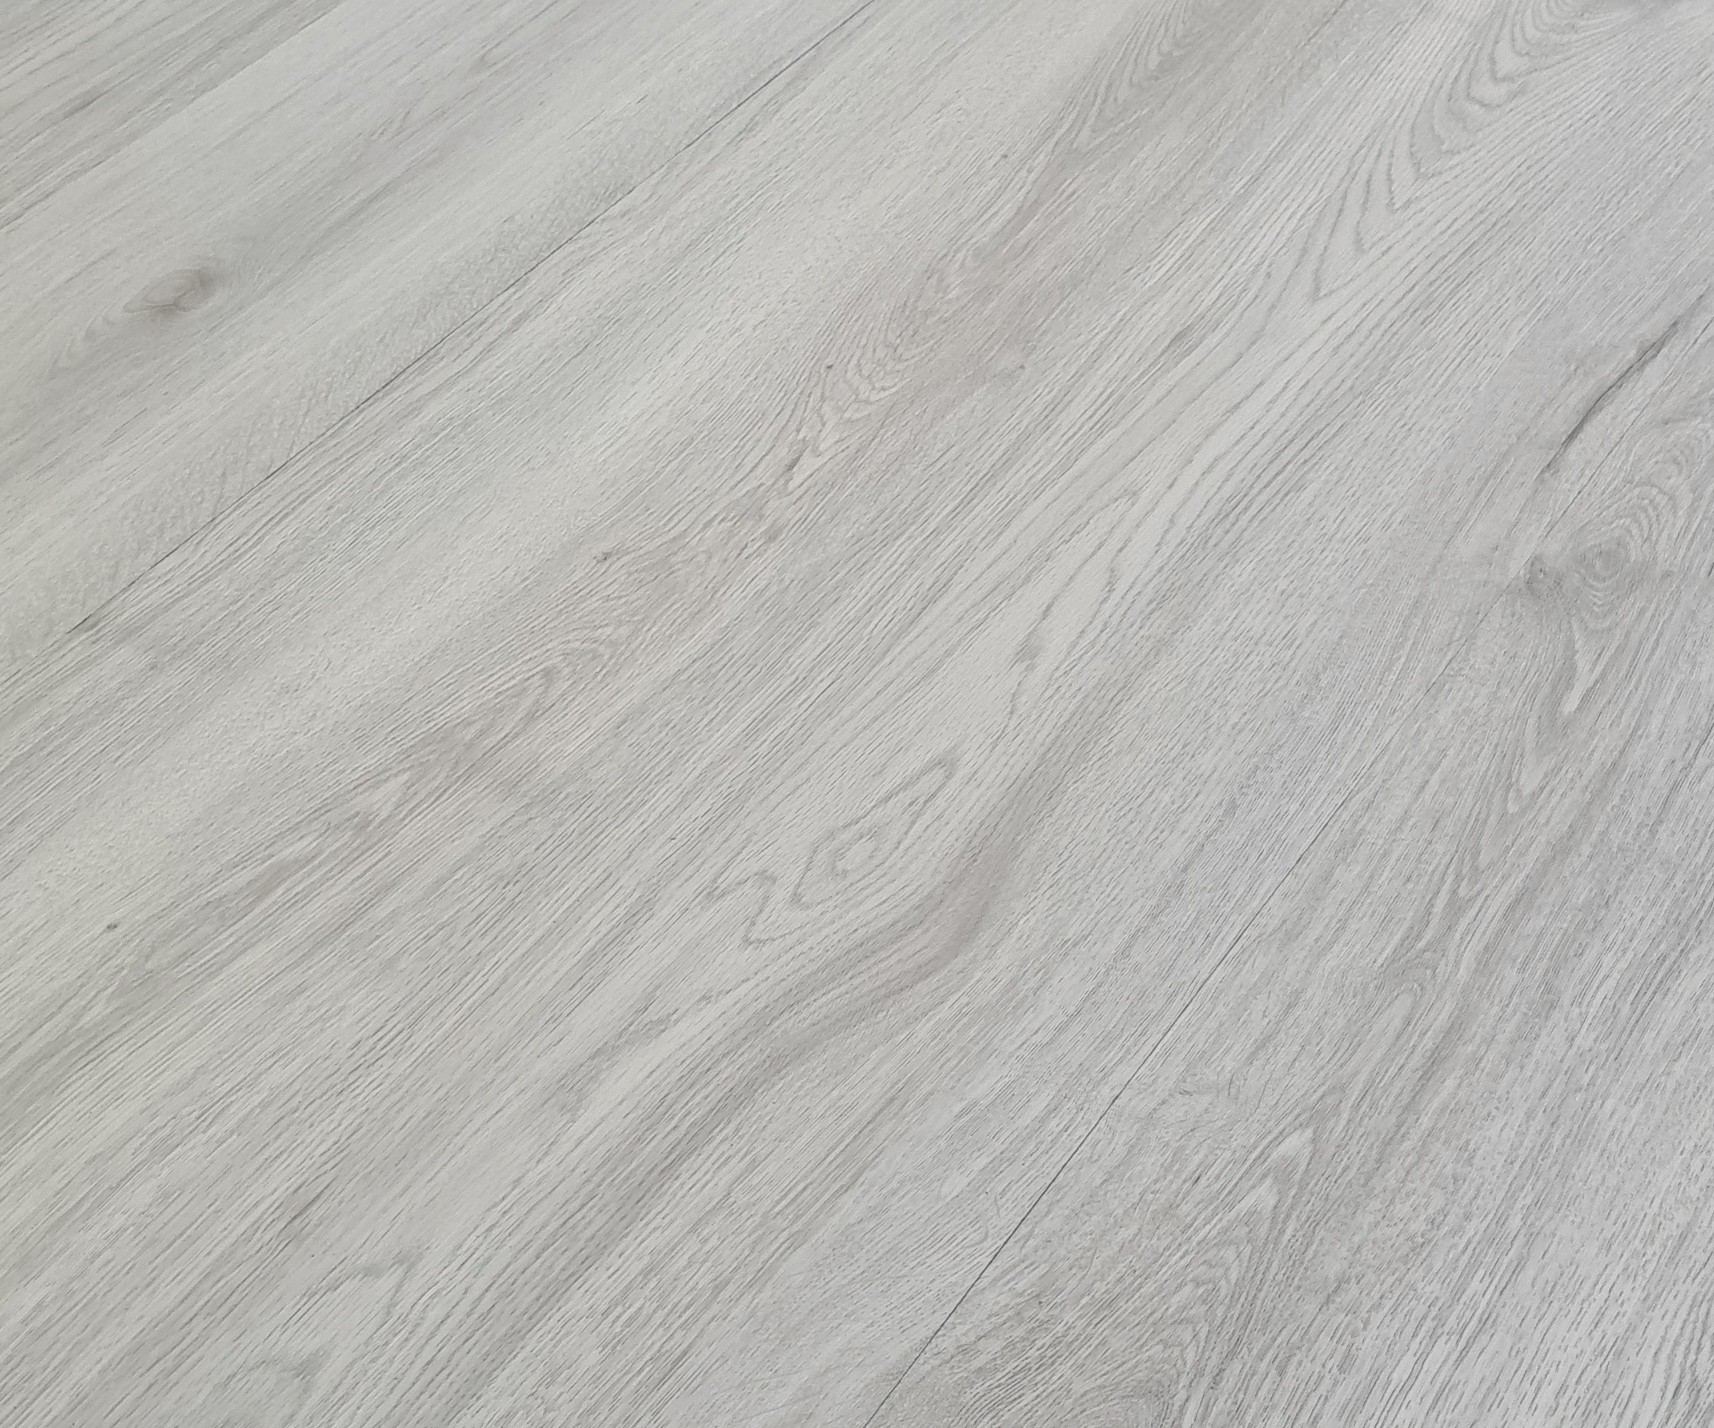 Podlaha vinylová zámková HDF Home XL karakum oak light grey KPP